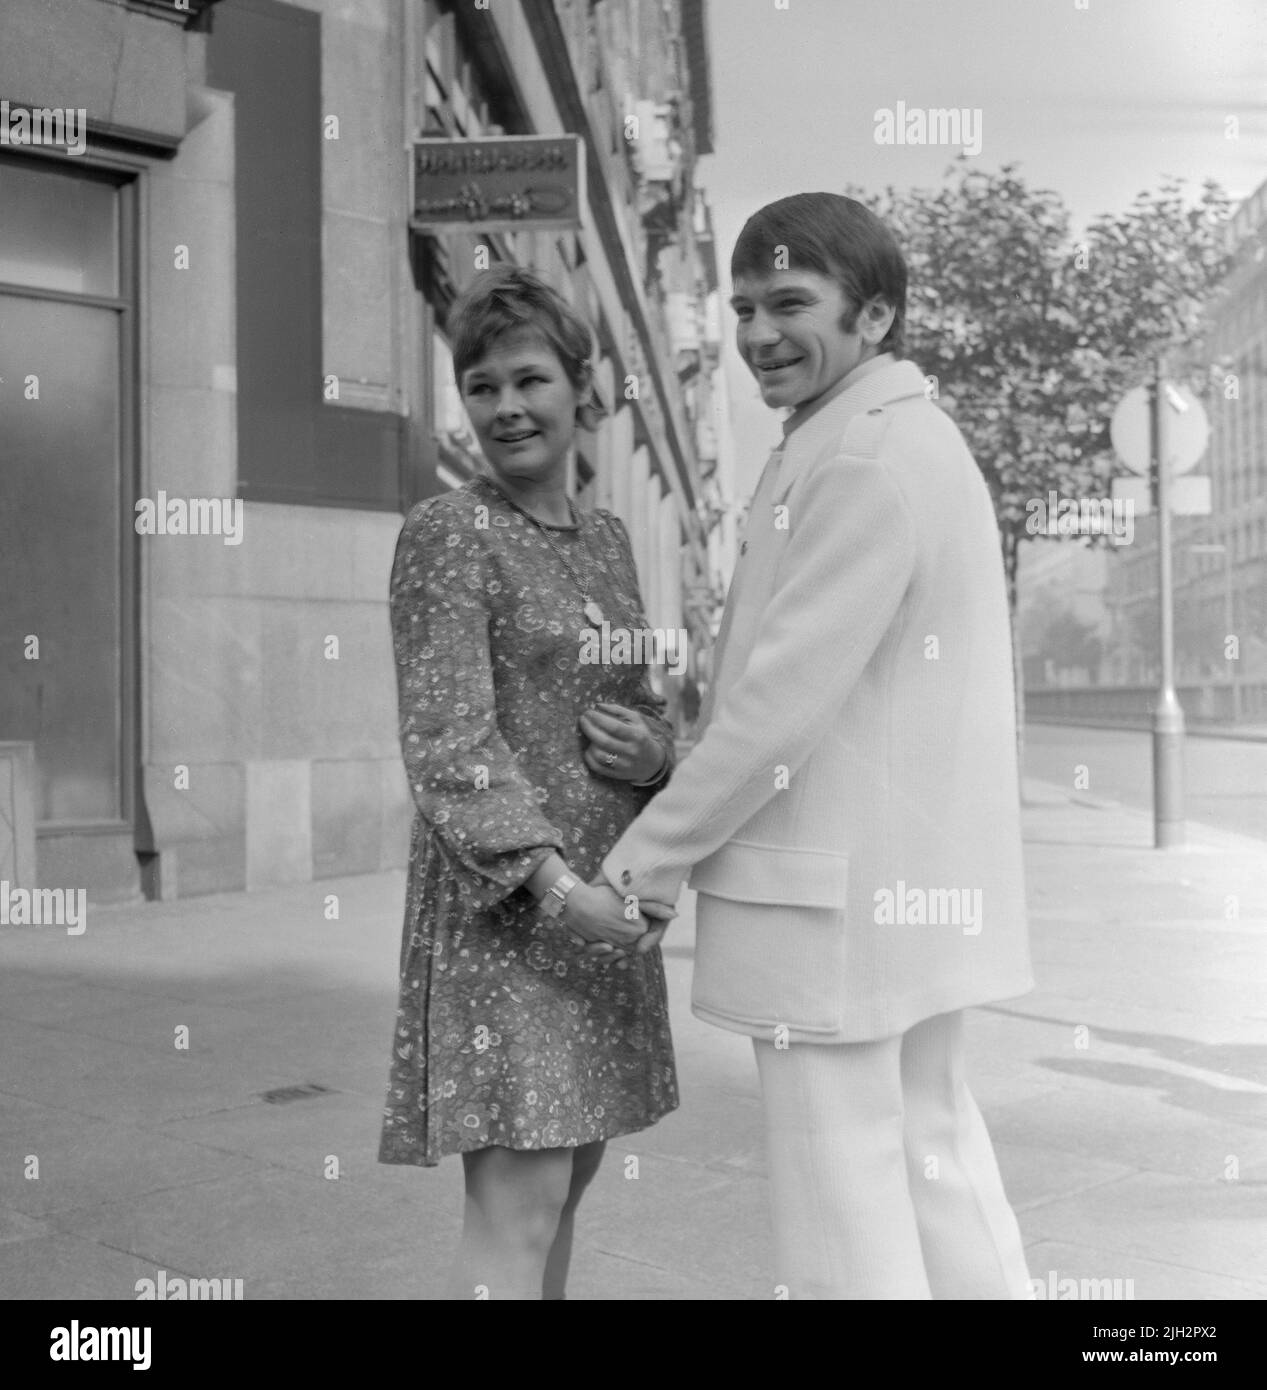 L'actrice anglaise Judi Dench et son fiancé alors l'acteur Michael Williams, posent pour la caméra, après leur engagement, à Londres en 1970. Banque D'Images